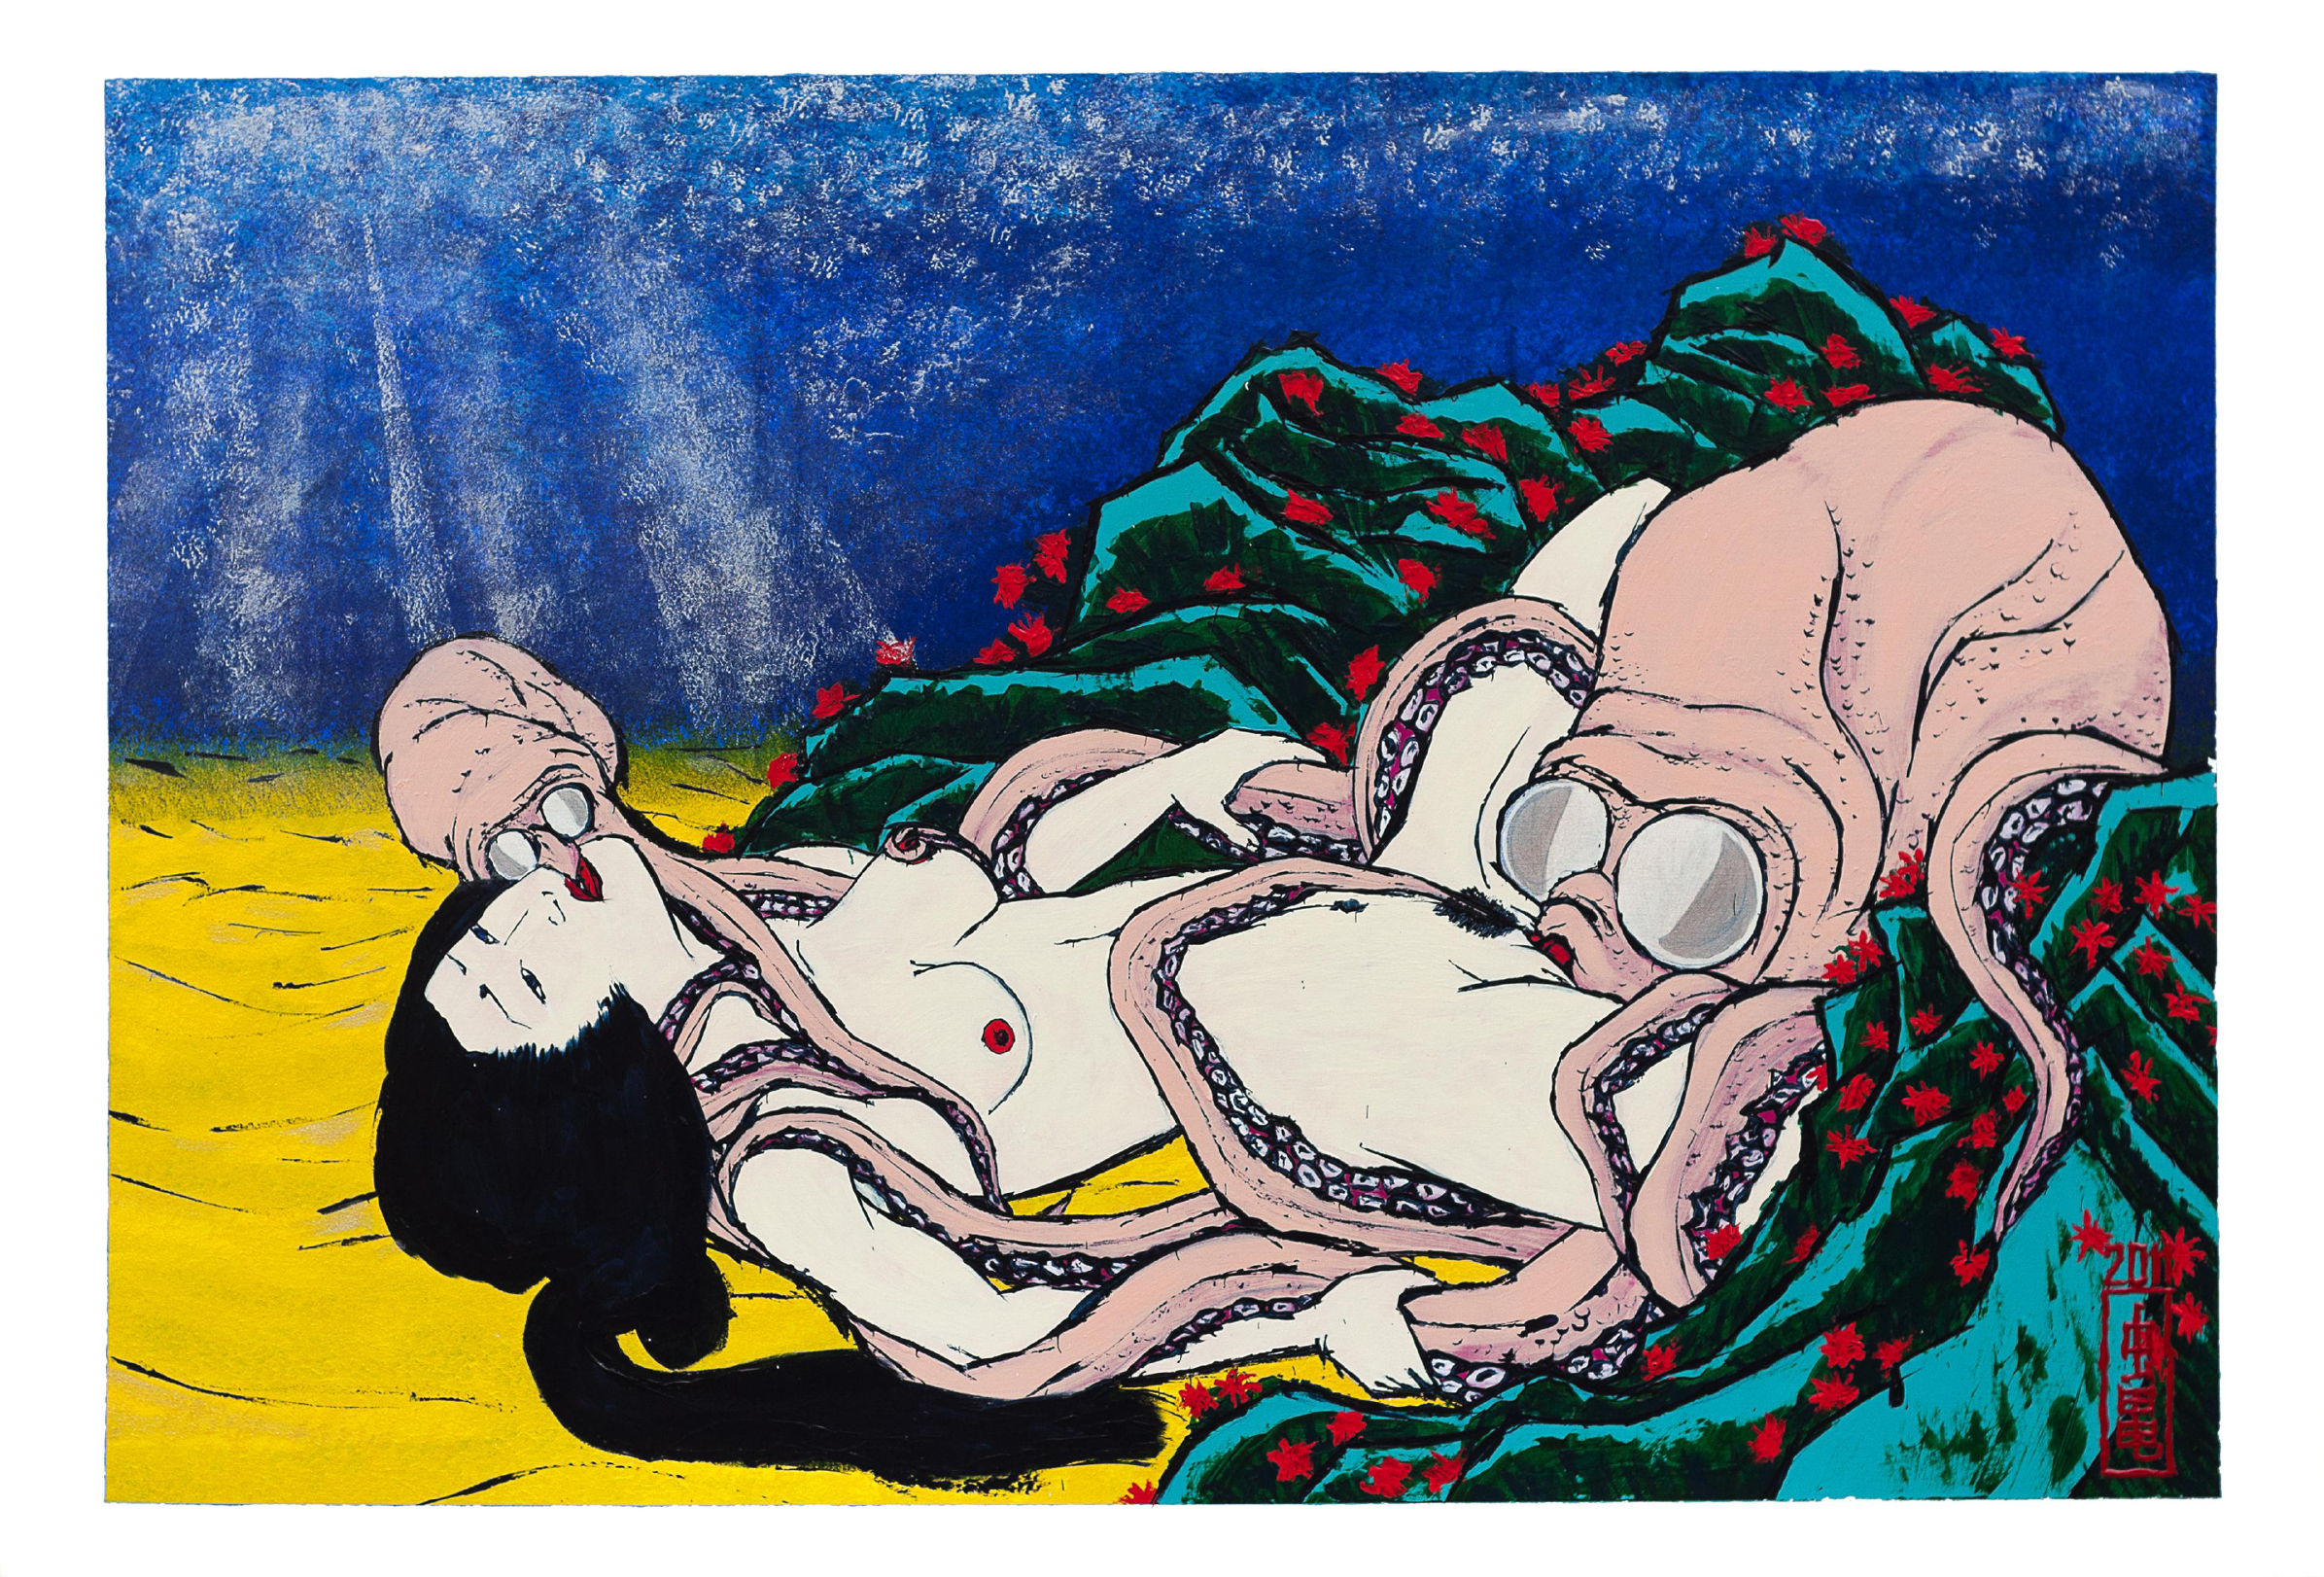 Ama and Octopus after Hokusai